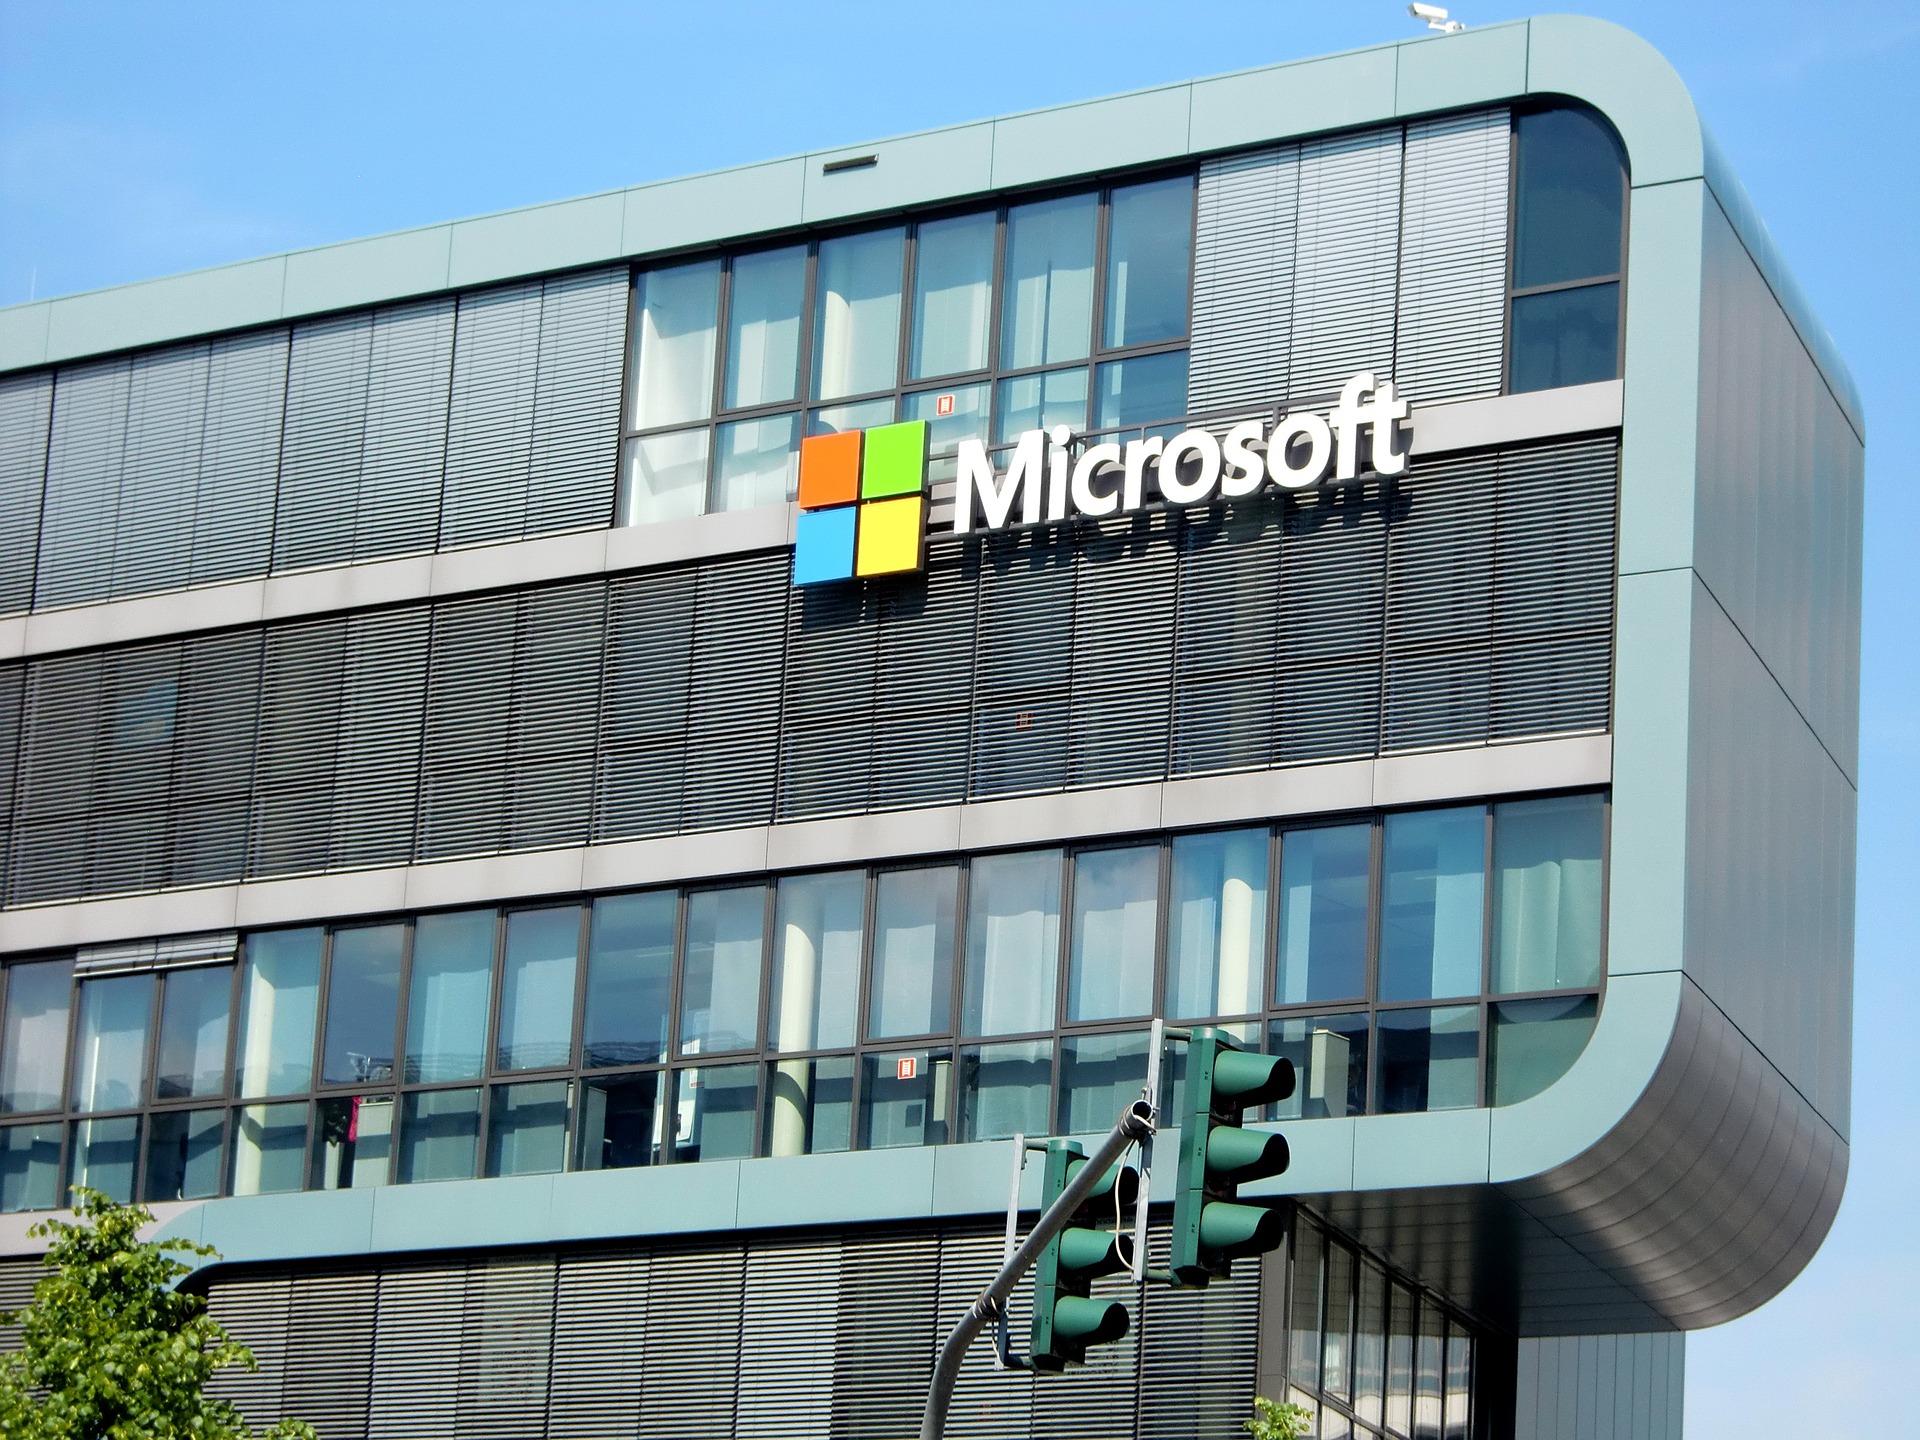 Servicios de Microsoft sufren fallos; Señalan posible error en la red